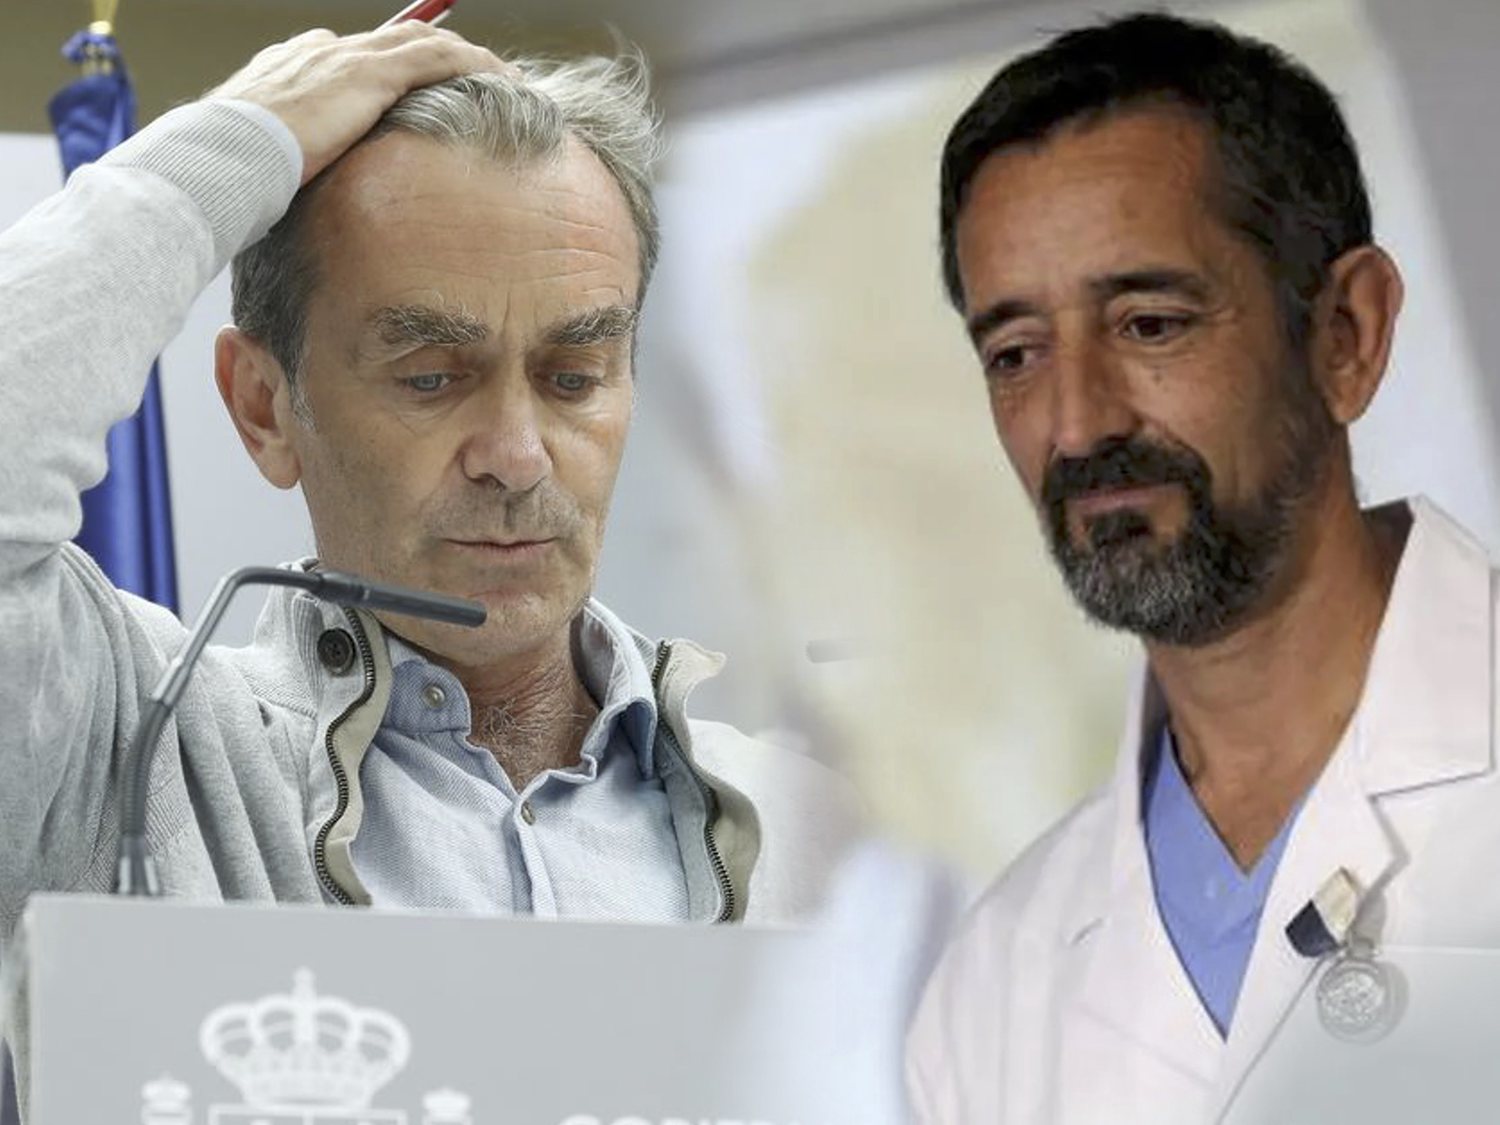 El doctor Cavadas critica la gestión de Fernando Simón: "No ha habido expertos reales"